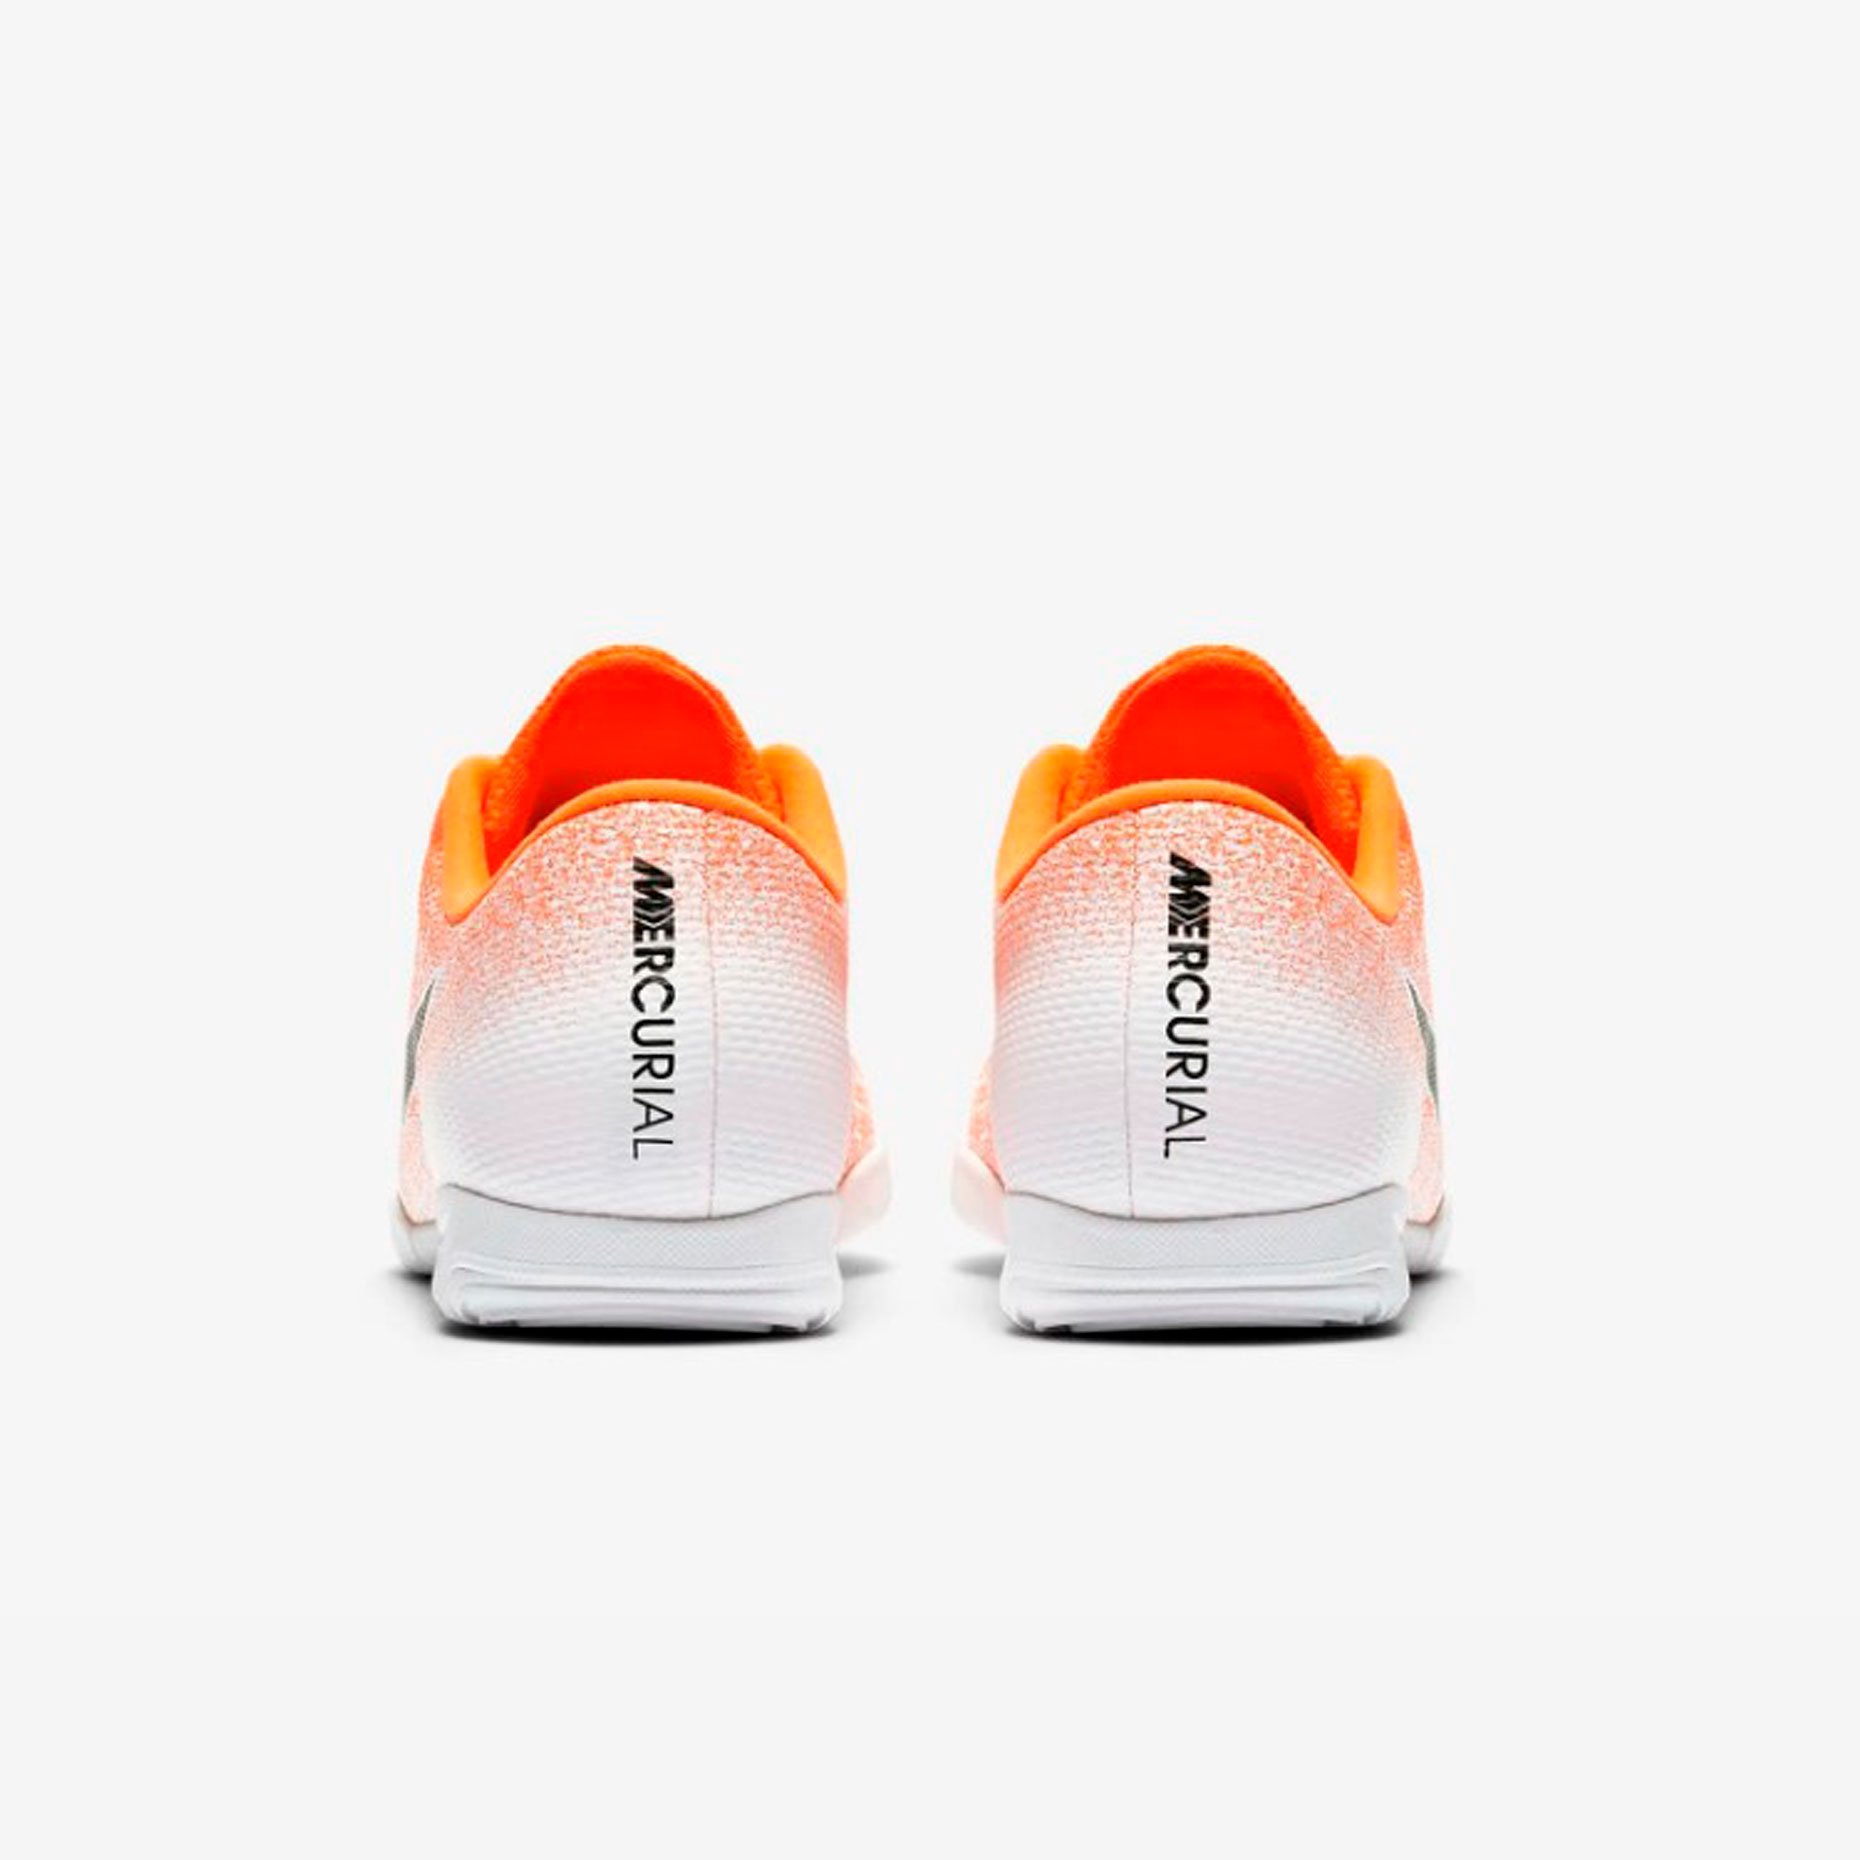 Игровая обувь для зала Nike Mercurial Vapor 12 Academy IC